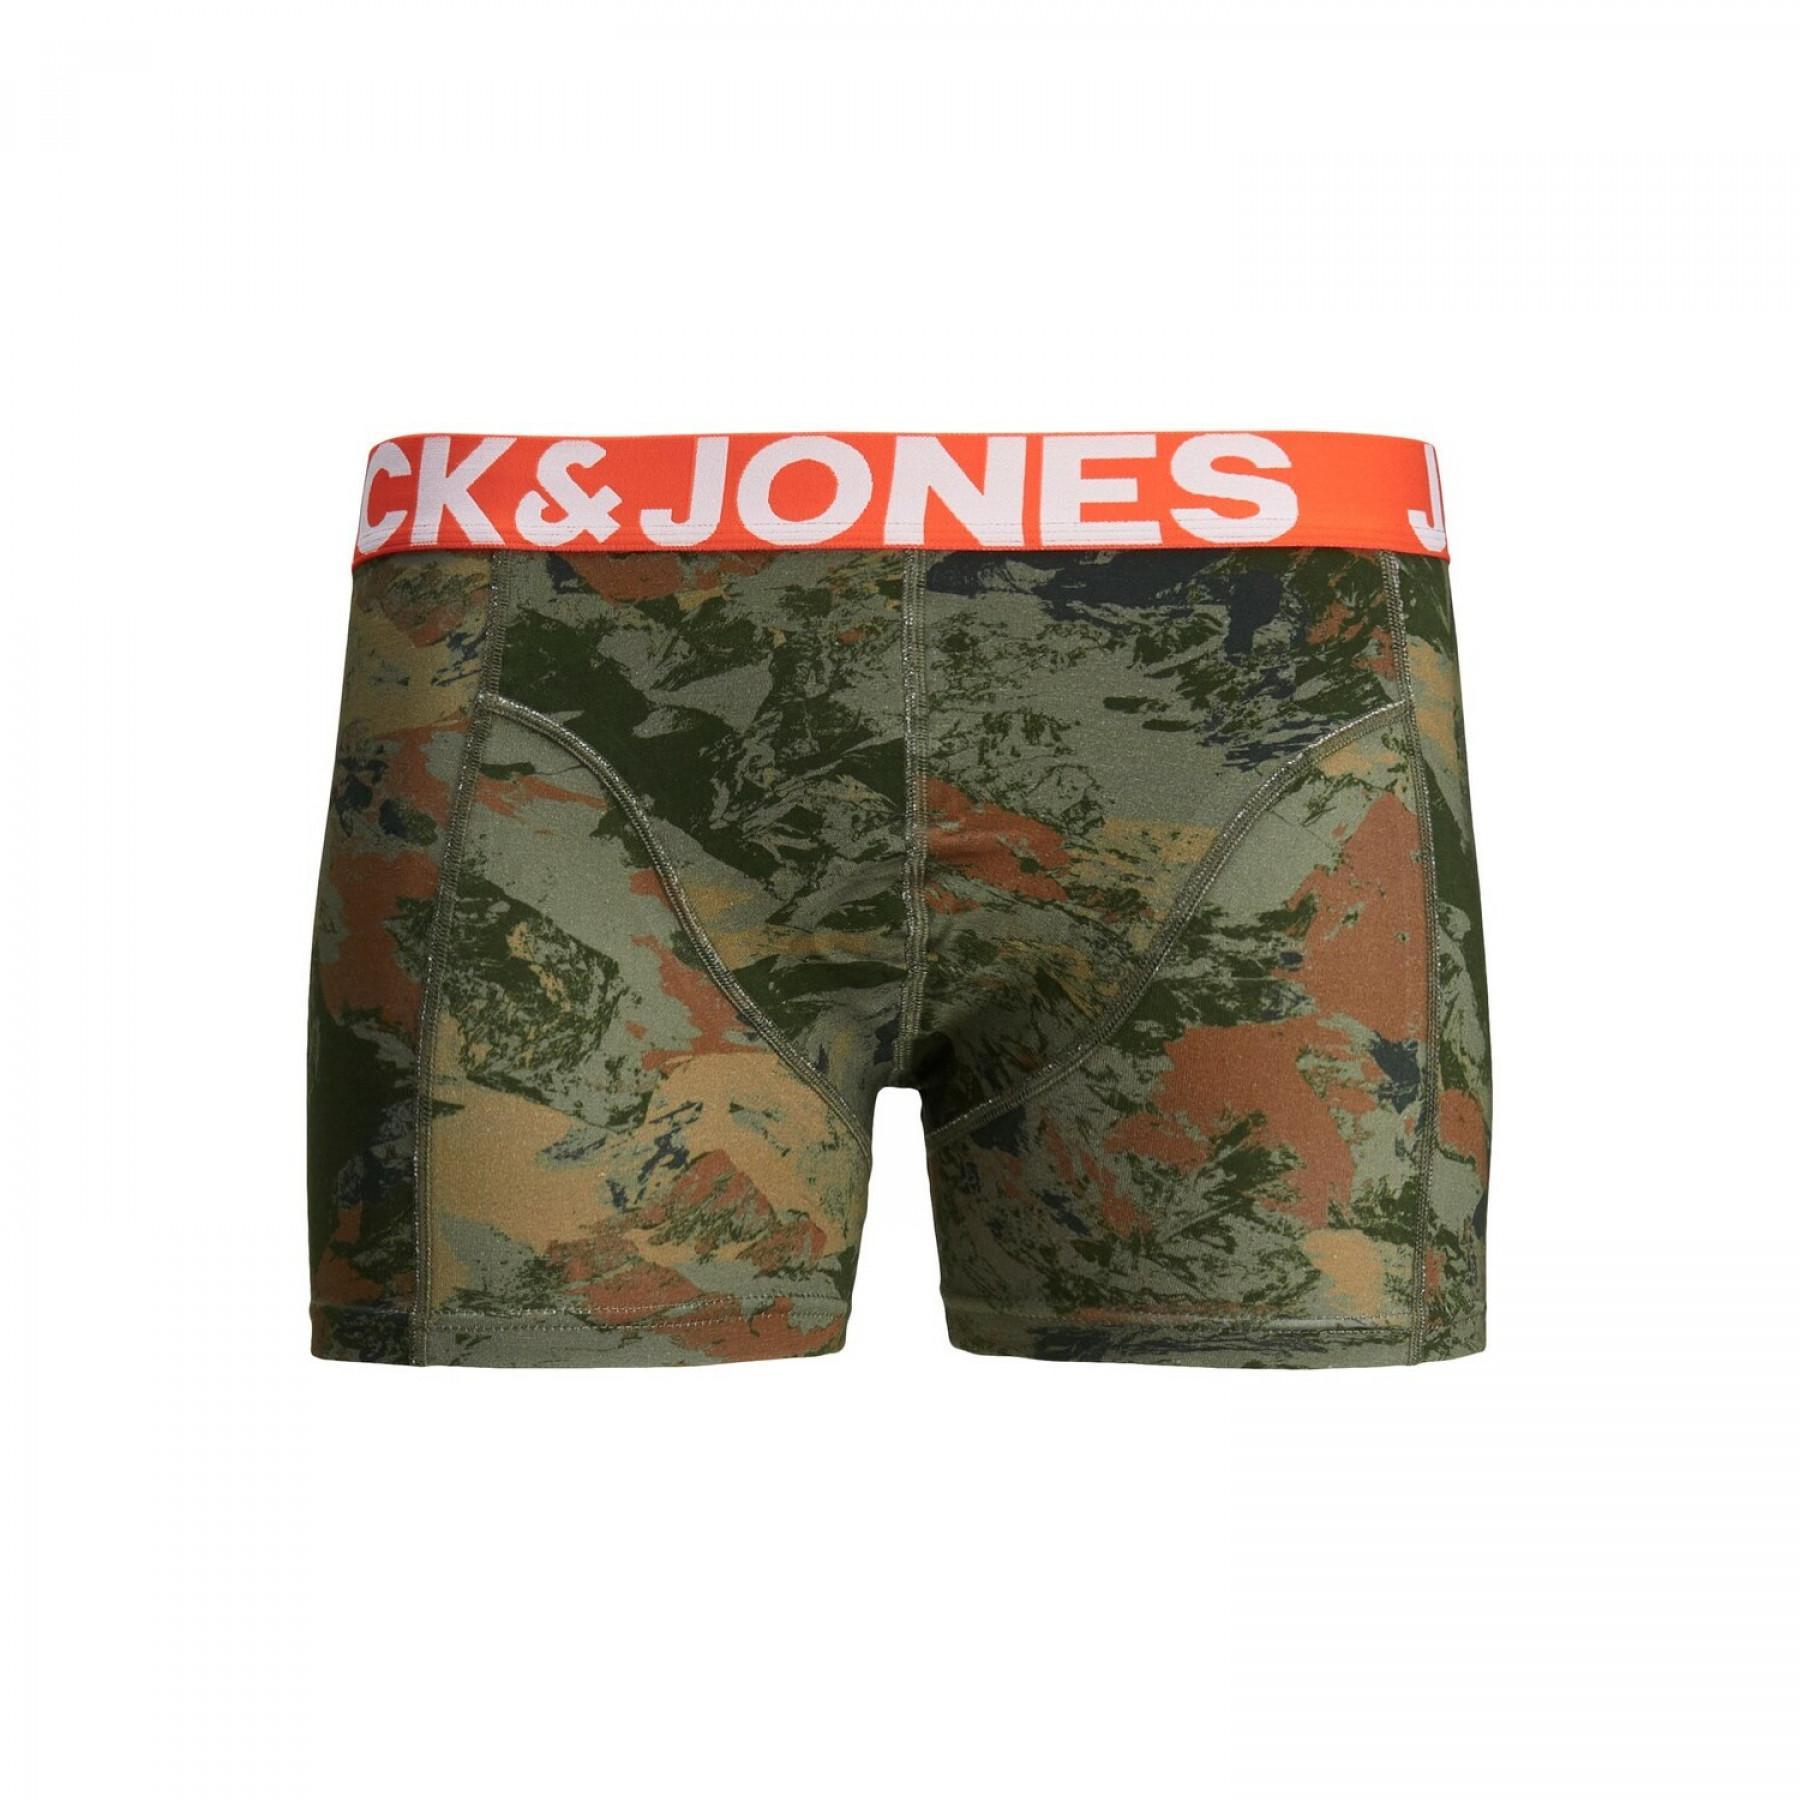 Boxershorts Jack & Jones Jaccore camouflage